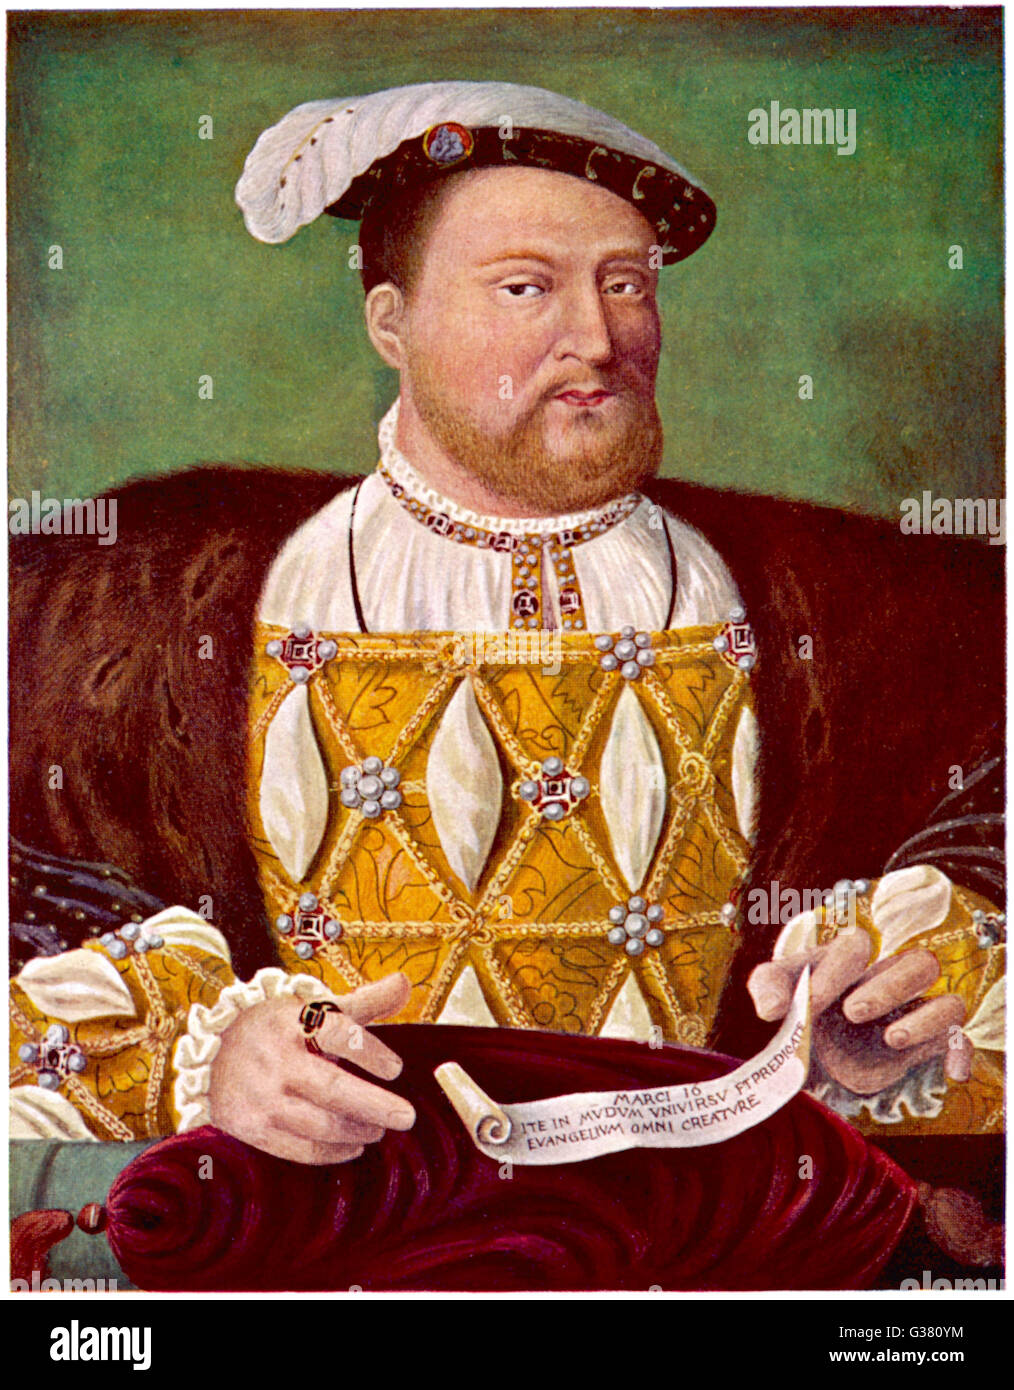 El rey Enrique VIII (1491 - 1547) Rey de Inglaterra 1509 - 1547 Foto de stock